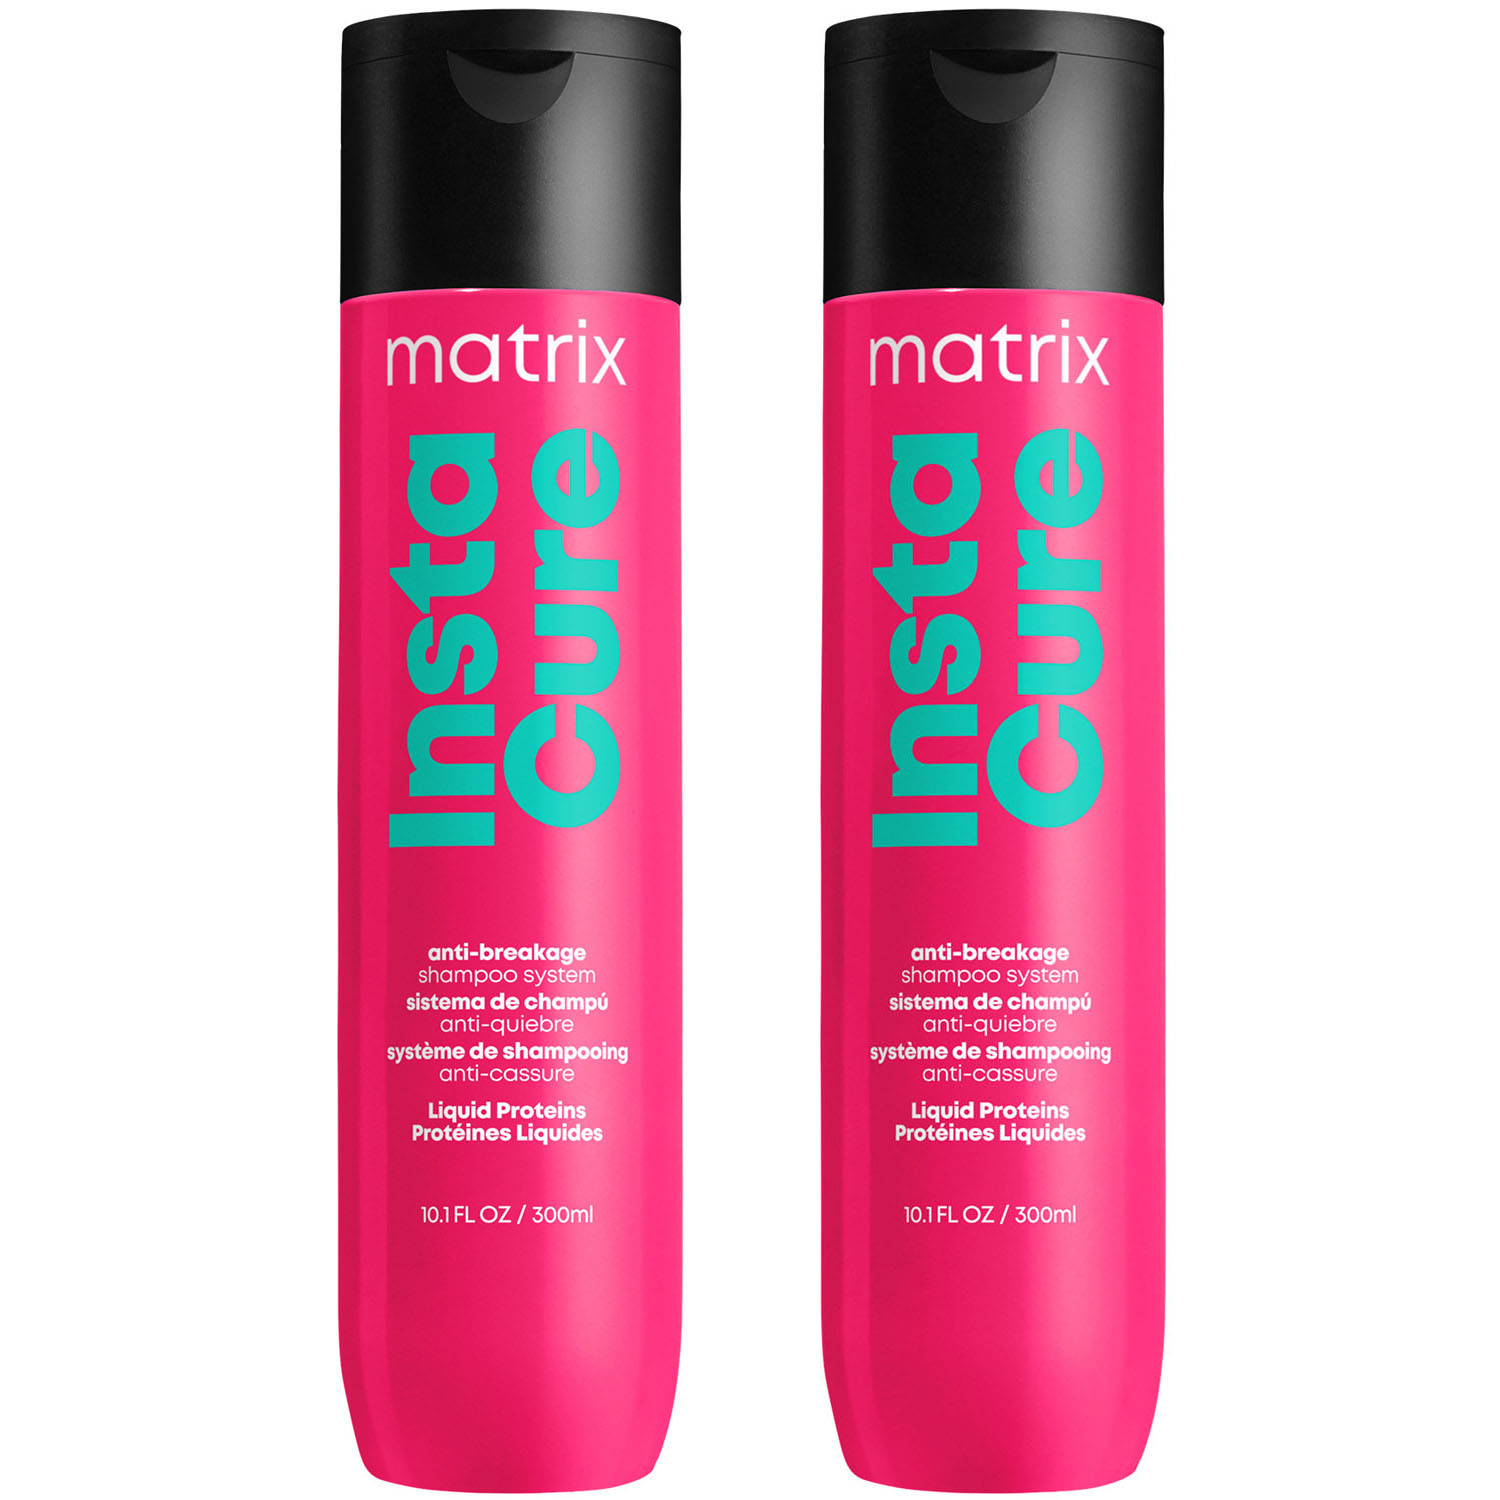 Matrix Профессиональный шампунь Instacure для восстановления волос с жидким протеином, 300 мл х 2 шт (Matrix, Total Results) шампунь против ломкости агава шампунь для поврежденных волос с агавой maui moisture strength